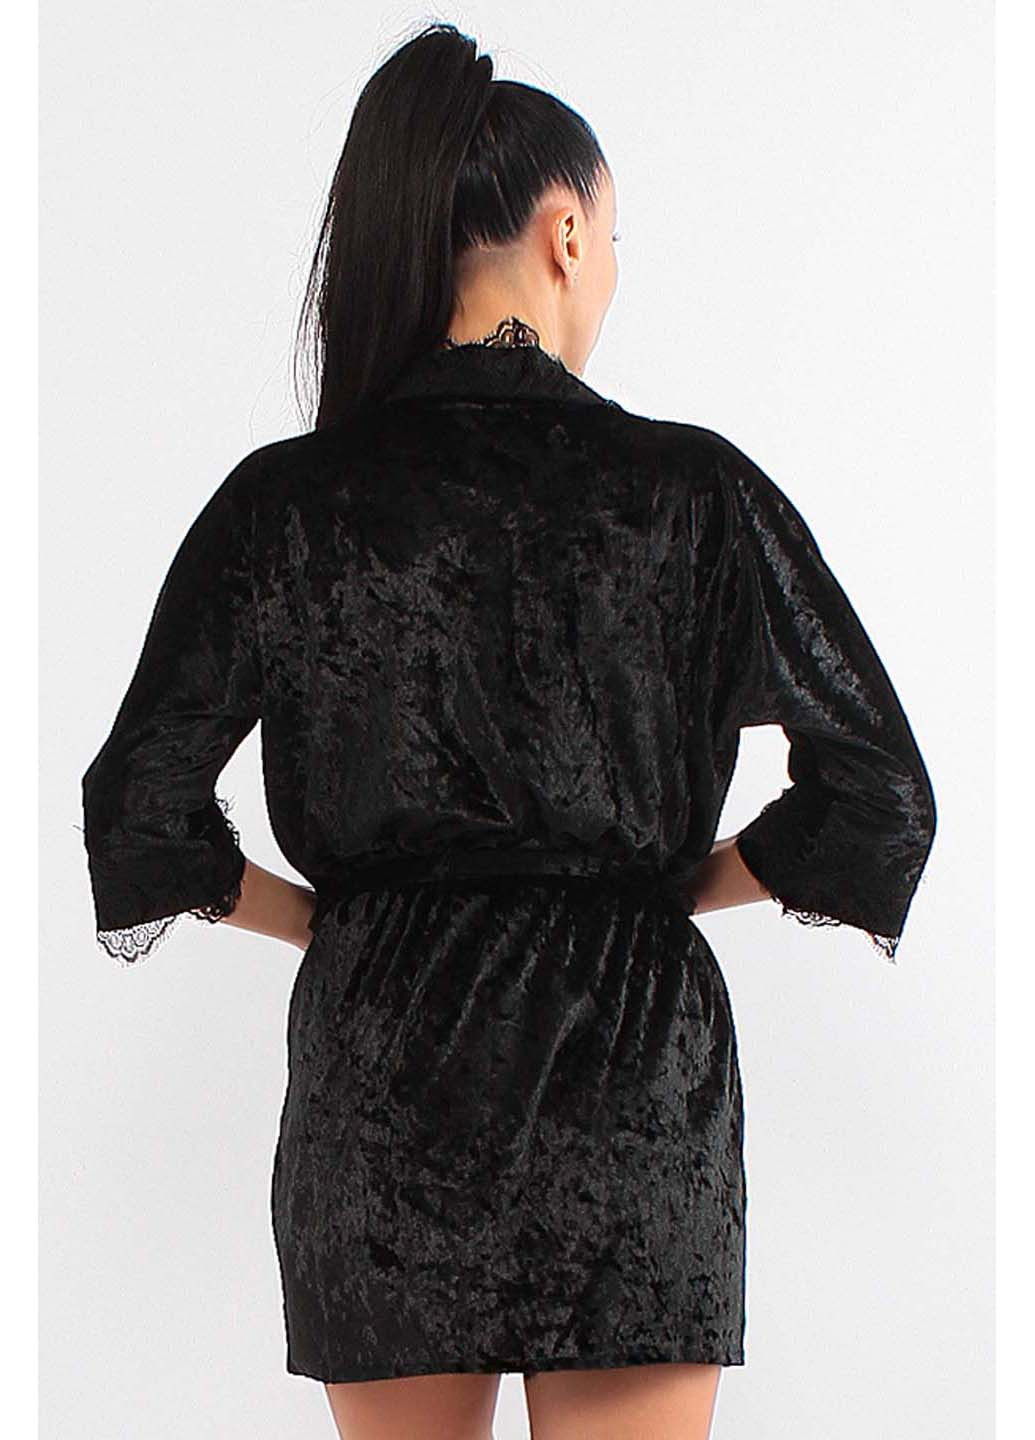 Черный демисезонный комплект халат + пижама Ghazel